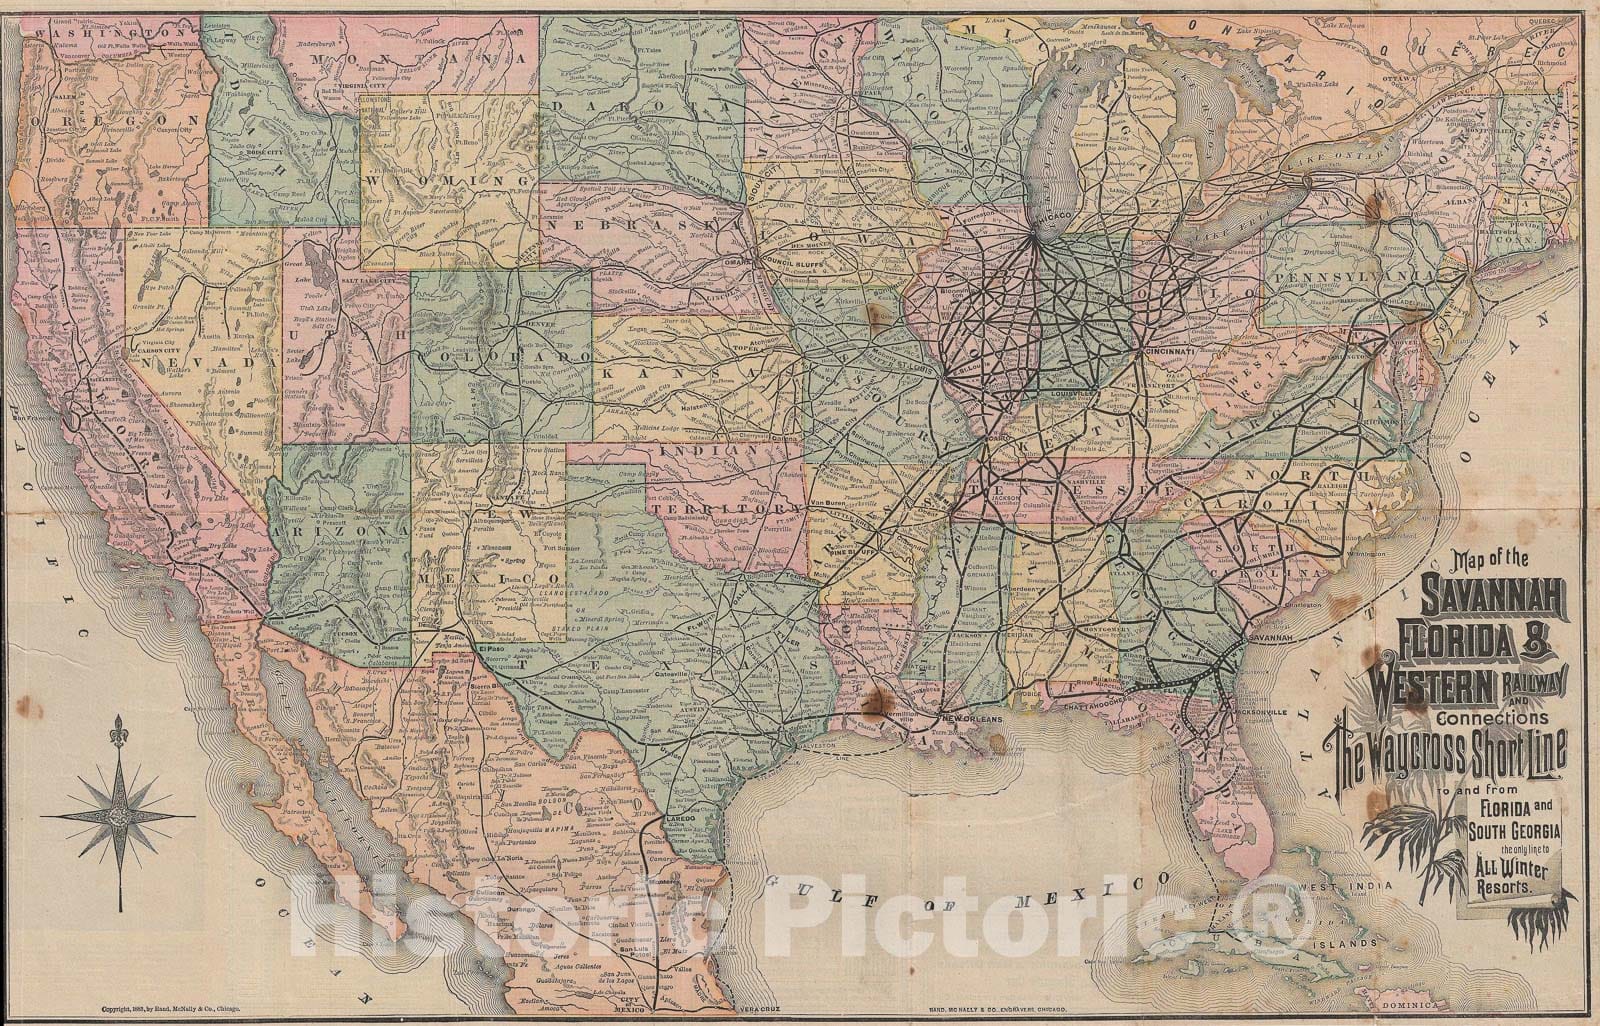 Historic Map : The Savannah, Florida and Western Railway, Rand McNally Railroad, 1883, Vintage Wall Art